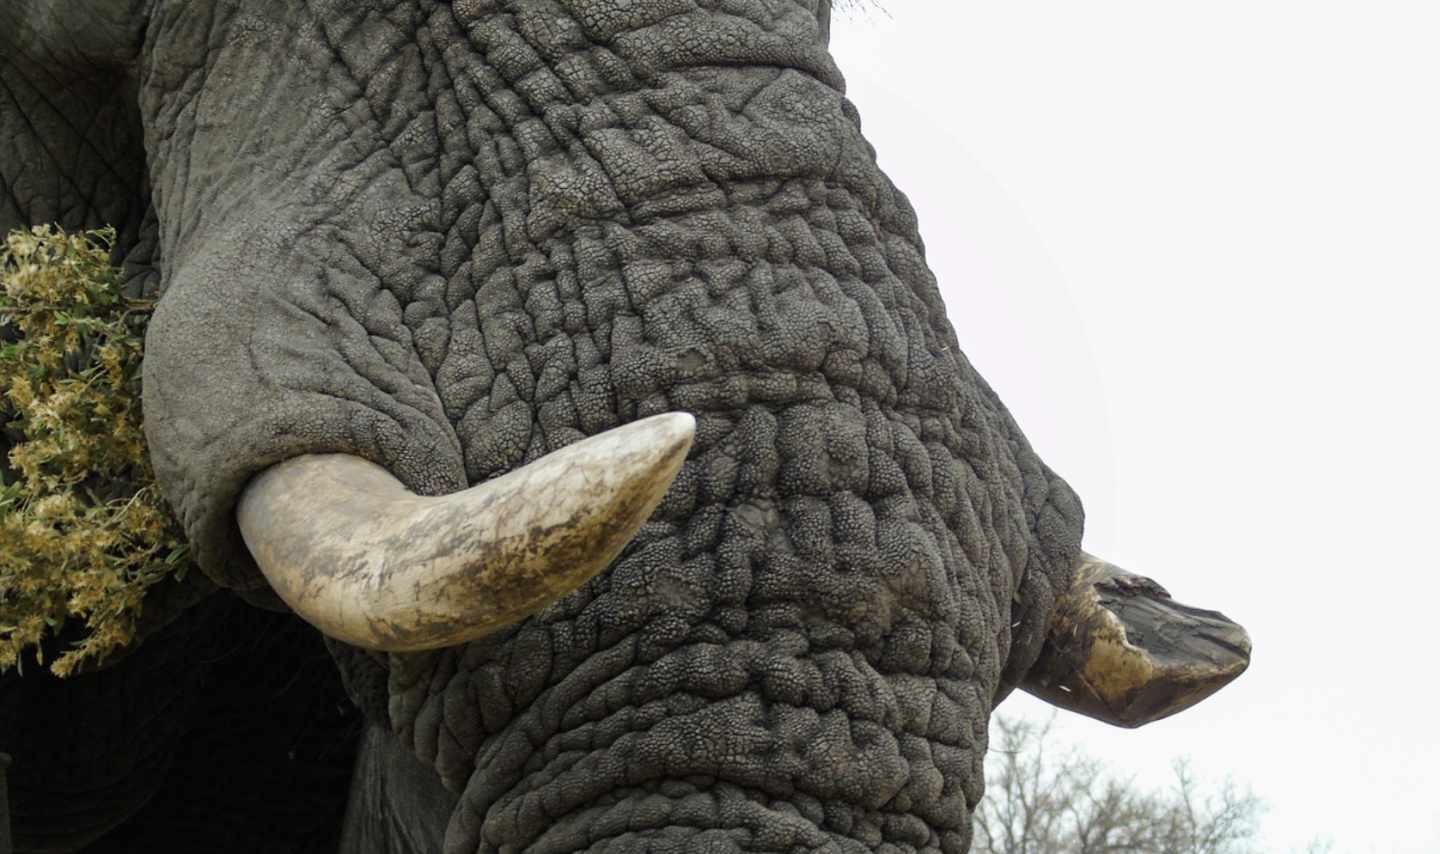 Elefante africano con un colmillo desprendido